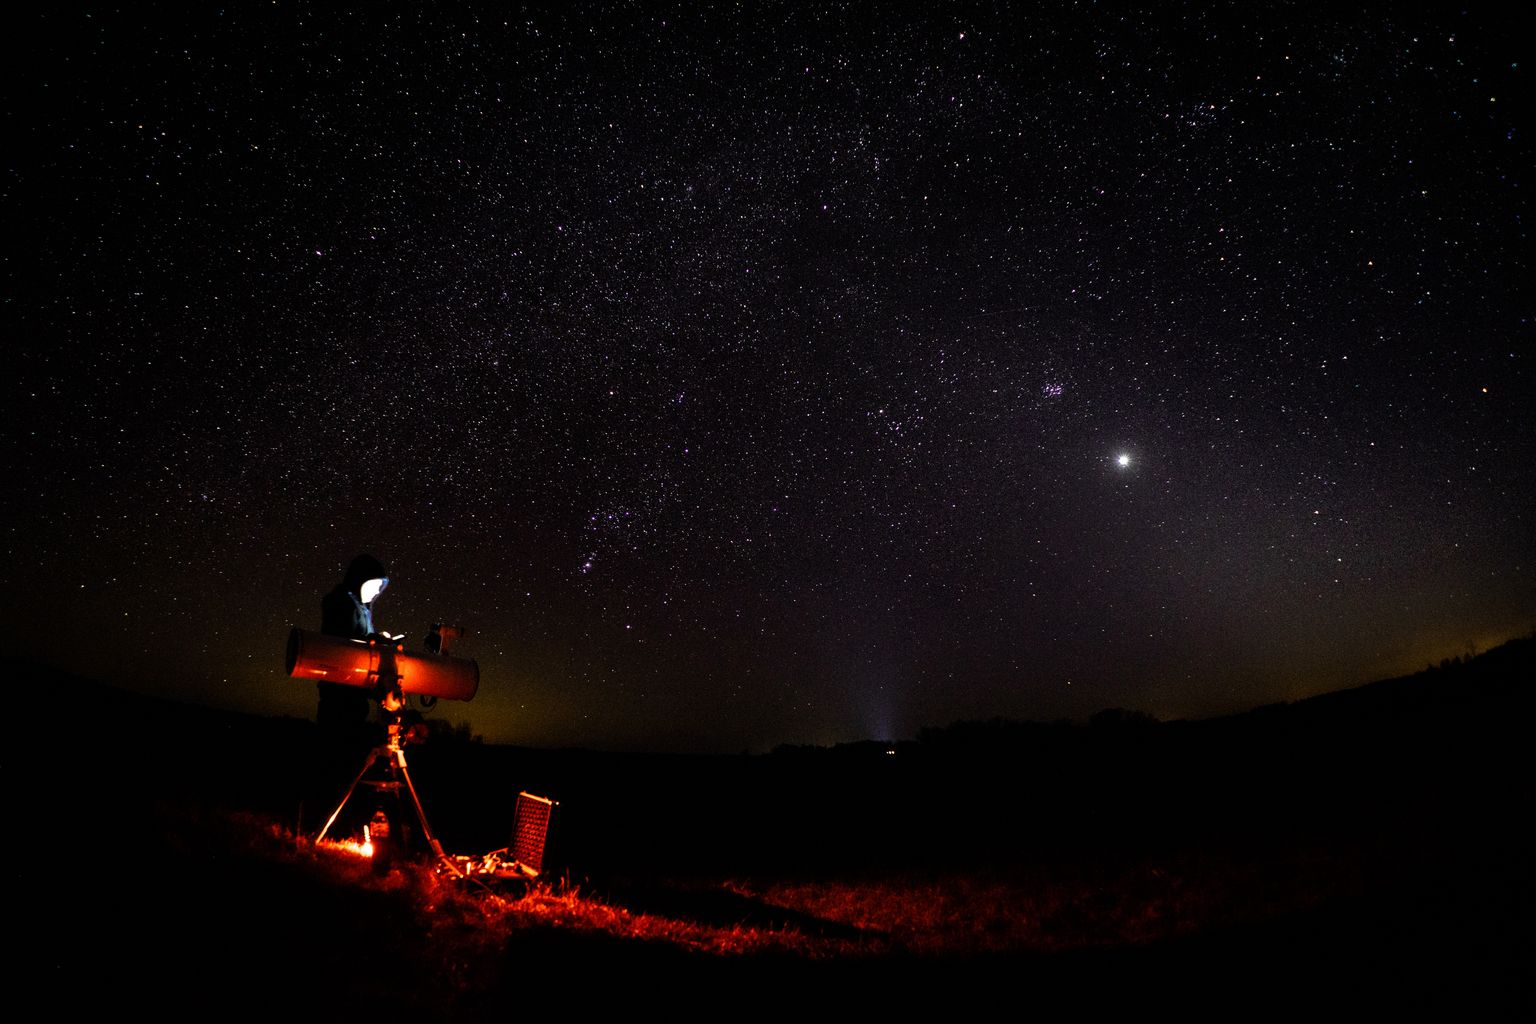 Foto möödunud neljapäevasest Tõrva astronoomiaklubi teleskoobivaatlusest. Heledaim objekt on planeet Veenus ja selle kohal ja vasakul hajustäheparv Plejaadid, mida kutsutakse ka Taevasõelaks või jaapanipäraselt Subaruks.